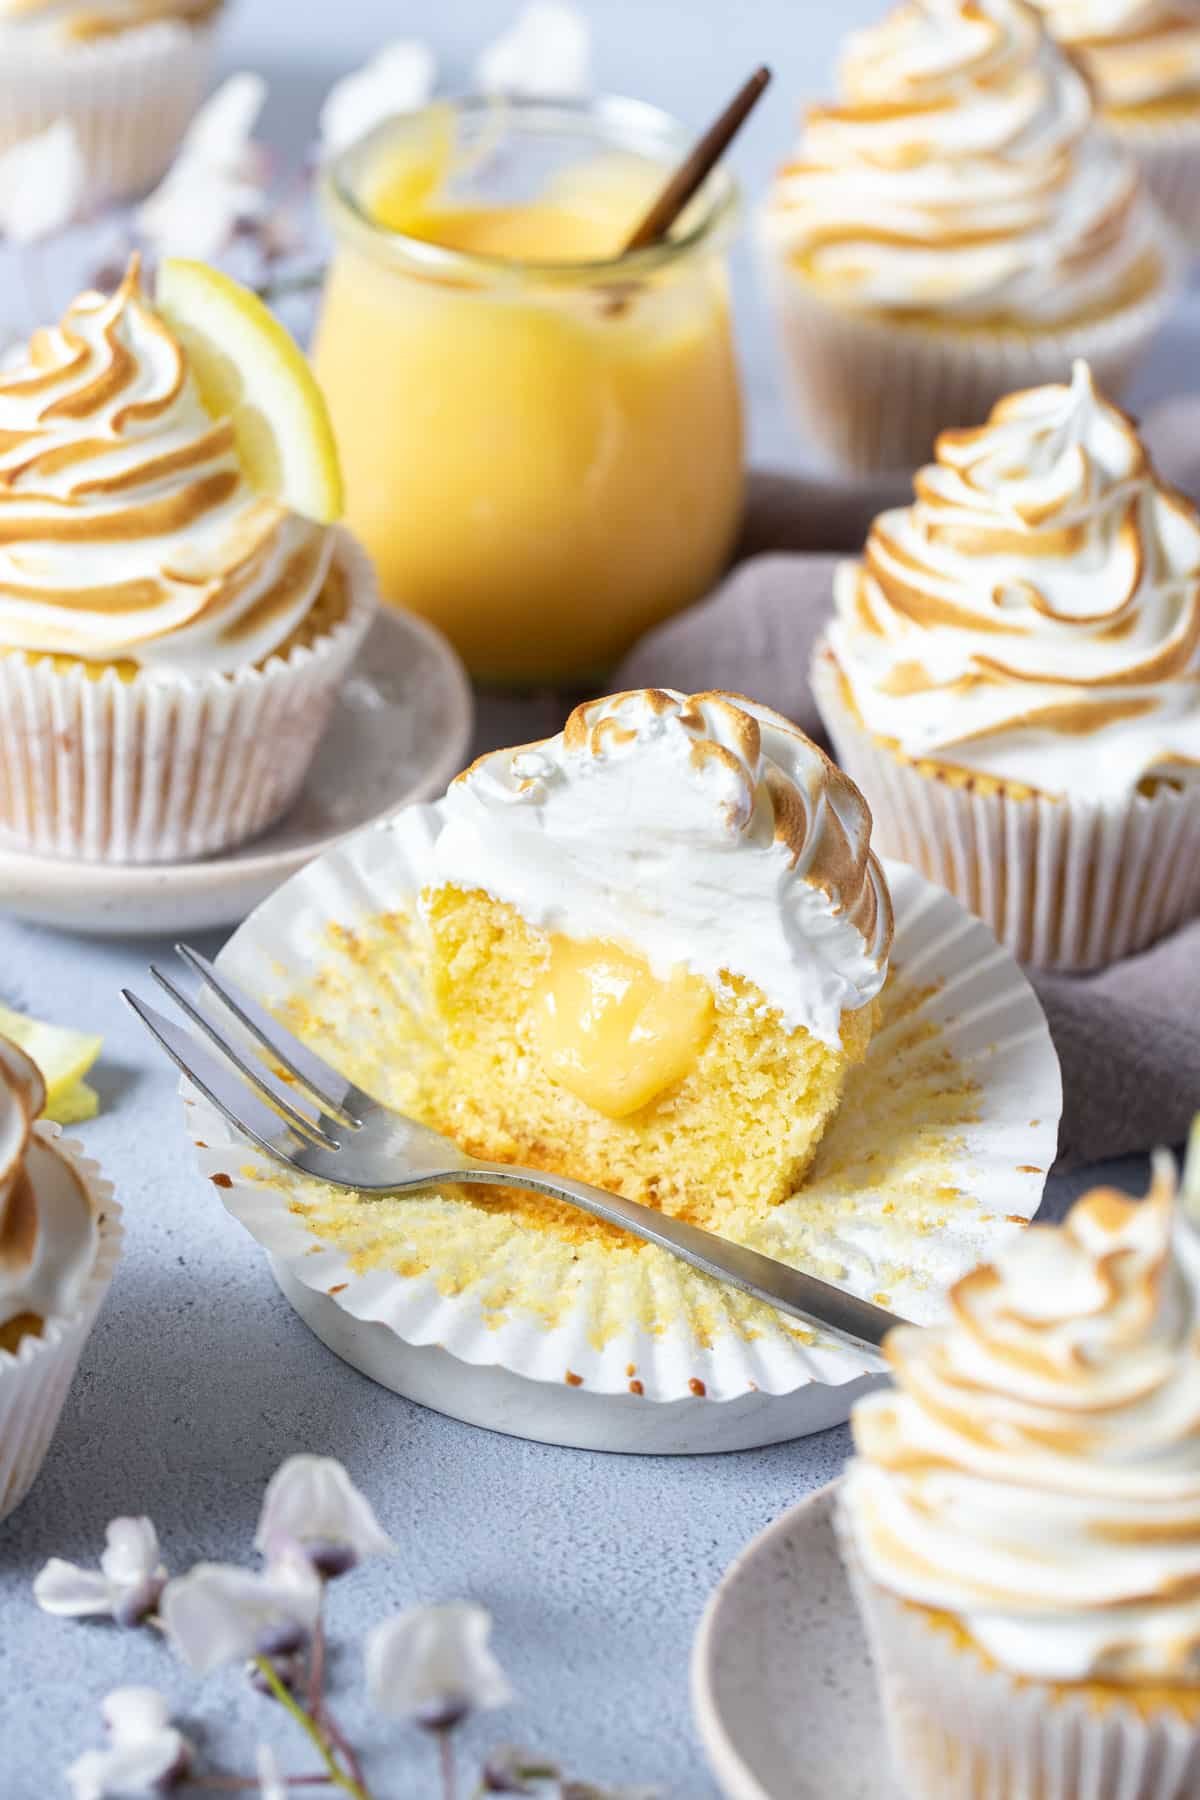 lemon meringue cupcakes on a table. One is cut open showing a lemon curd centre.